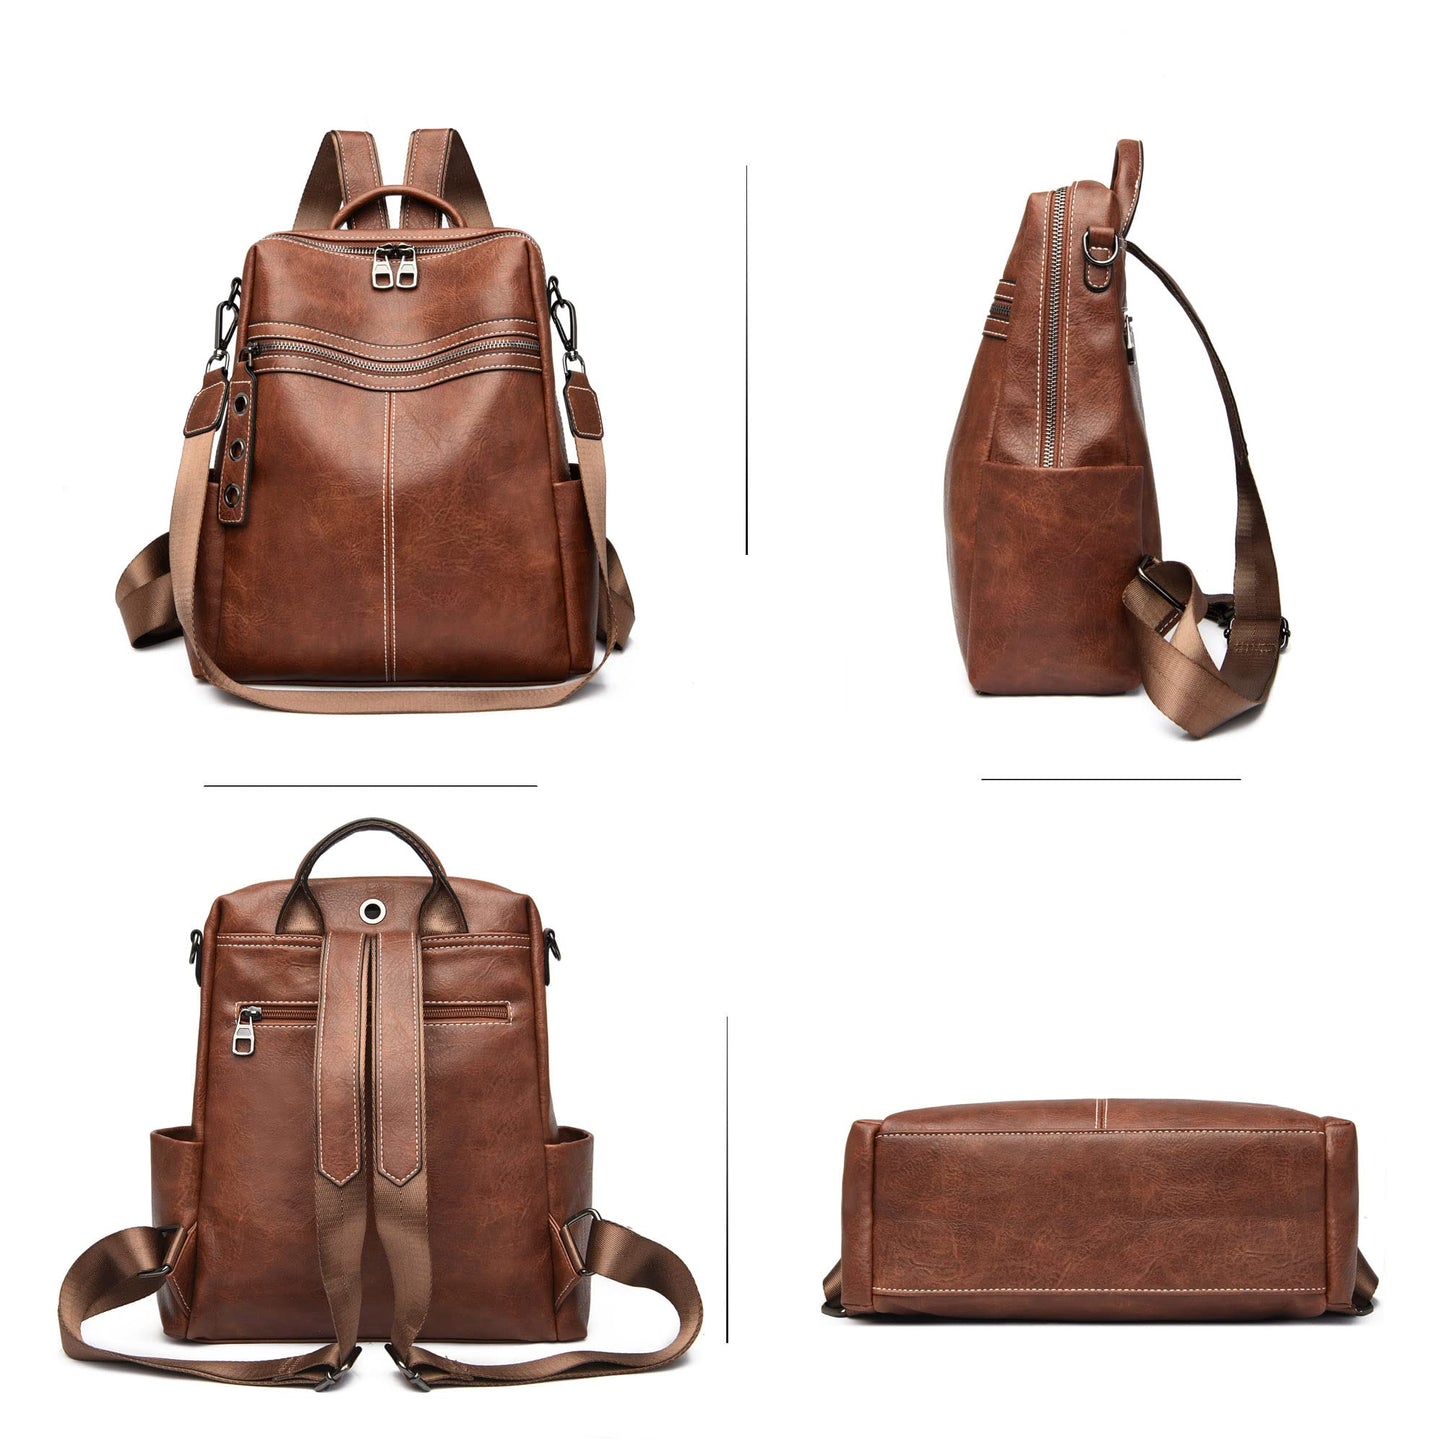 Maxoner Backpack Purse for Women Fashion Genuine Leather Convertible Shoulder Handbag Travel Bag Satchel Rucksack Ladies Bag